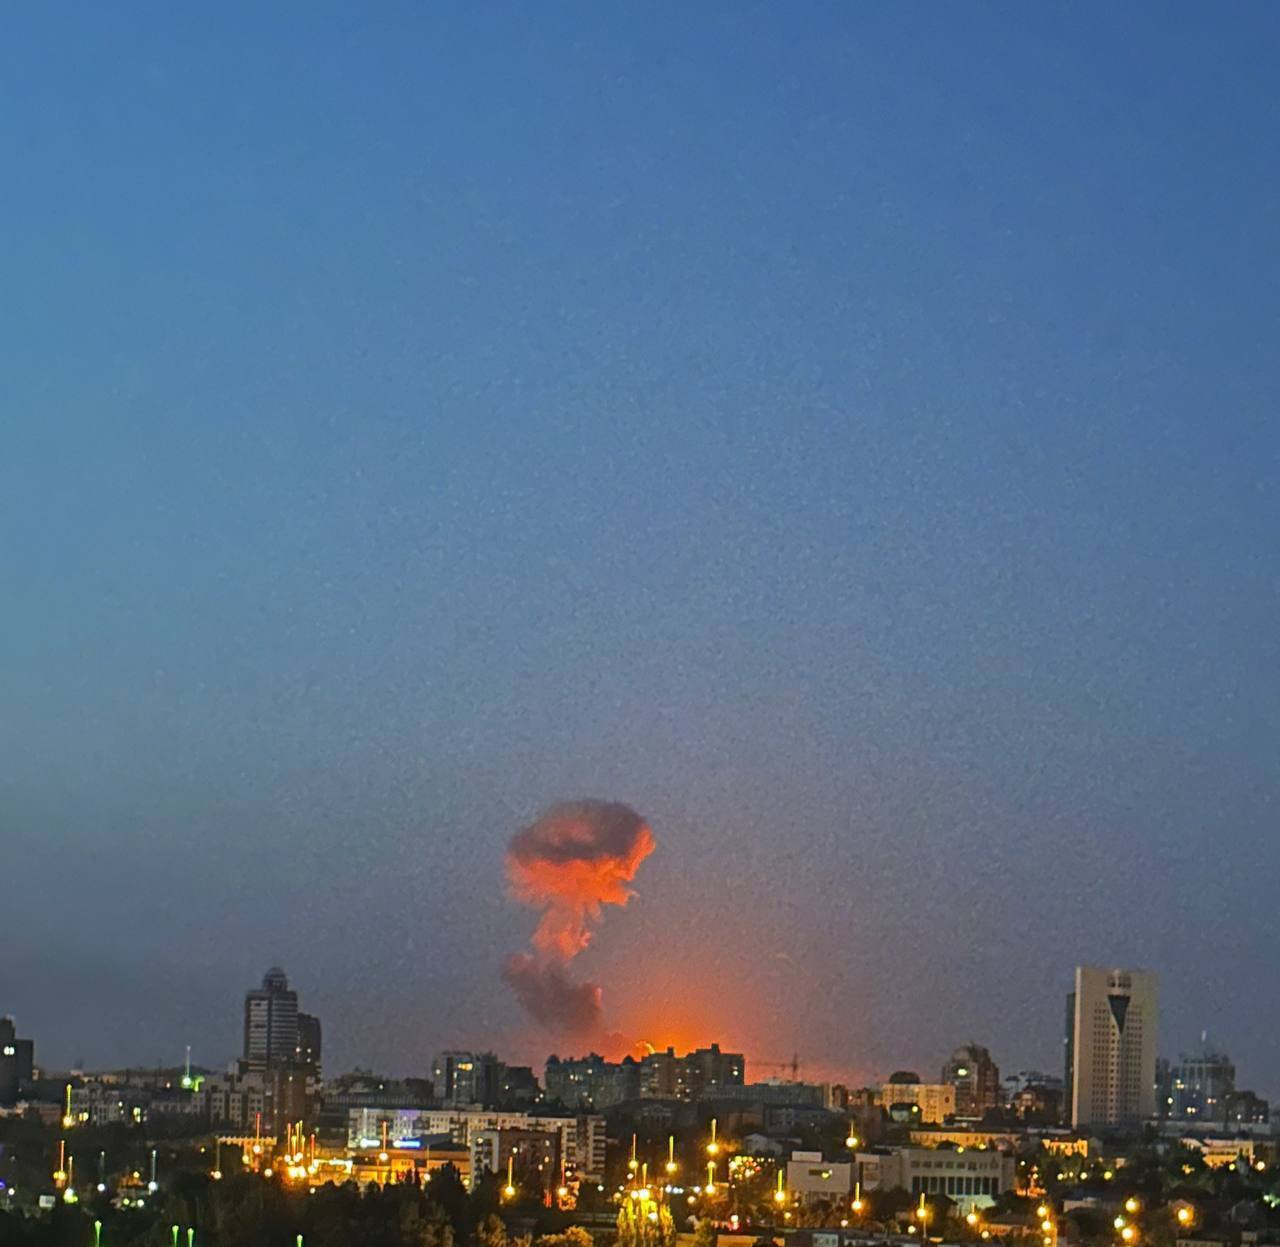 В оккупированной Макеевке взрывы: горит большой склад с боеприпасами. Эффектное видео